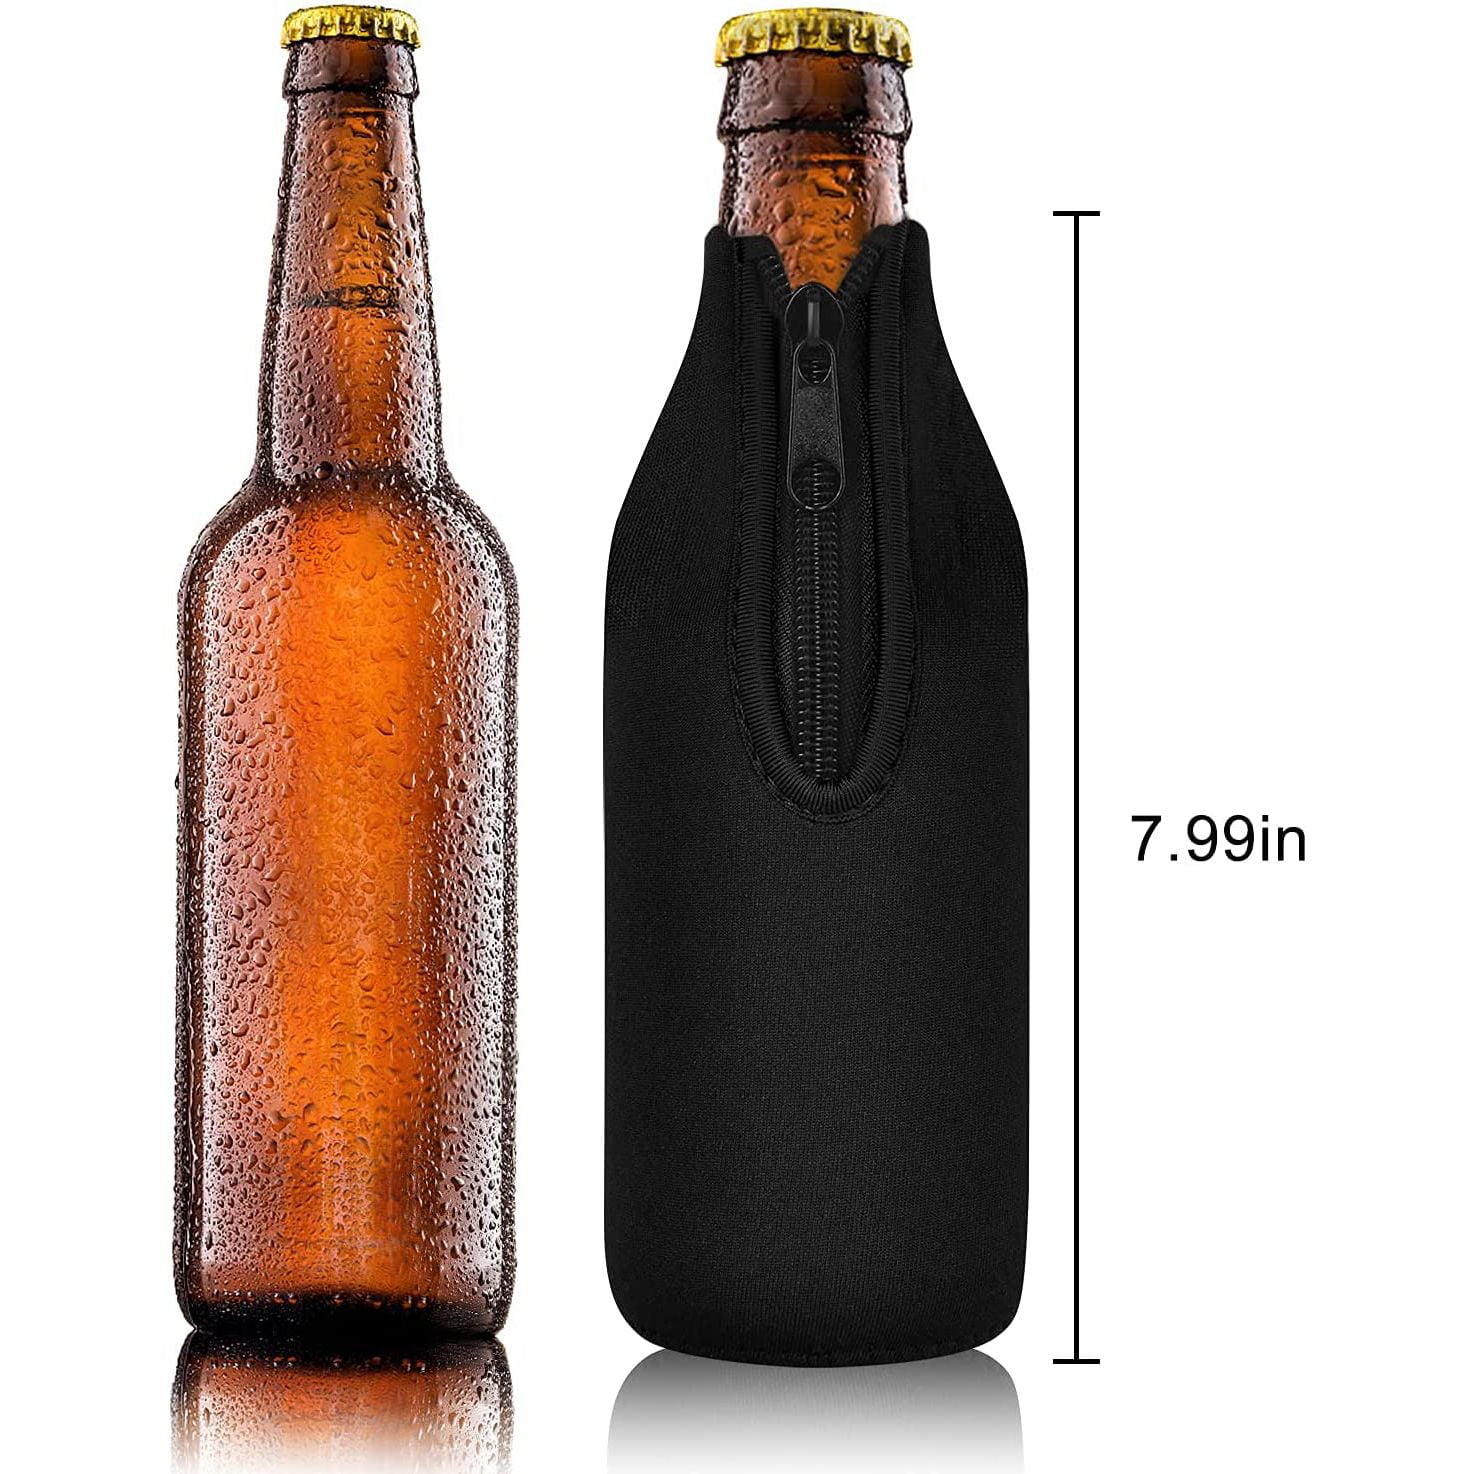 WKieason Neoprene Water Bottle Sleeves Insulators Beverage Bottle Can  Sleeves Covers 16 17 18 oz Beer Bottle Sleeves Coolers Holder Non-slip  Neoprene